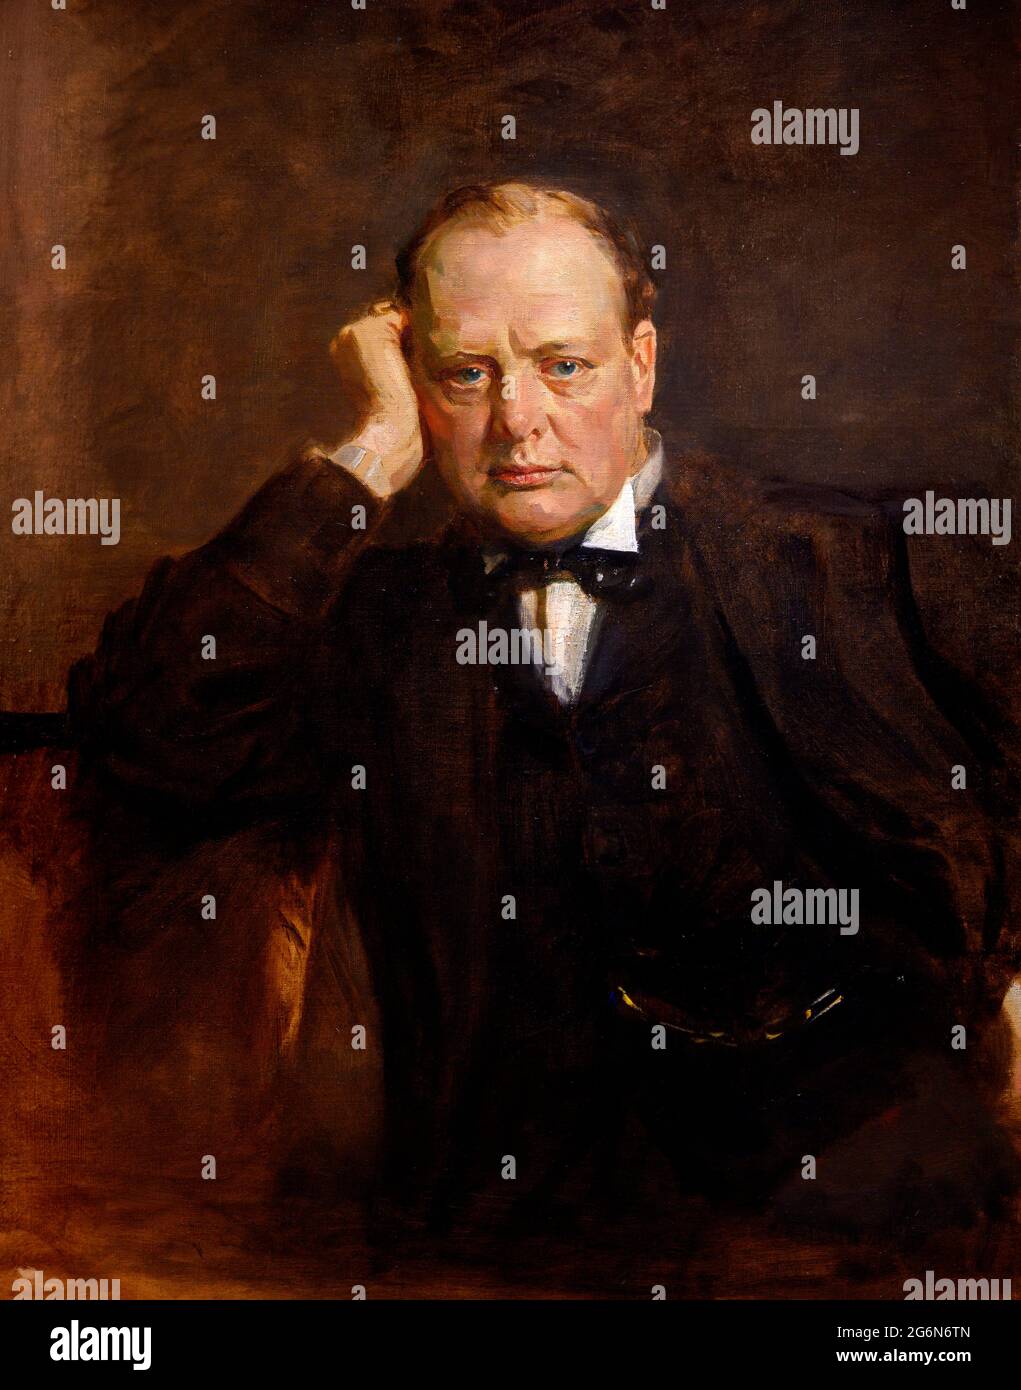 Winston Churchill. Ritratto del primo ministro britannico Sir Winston Churchill (1874-1965) di Sir James Guthrie (1859-1930), olio su tela, c.1919-21 Foto Stock